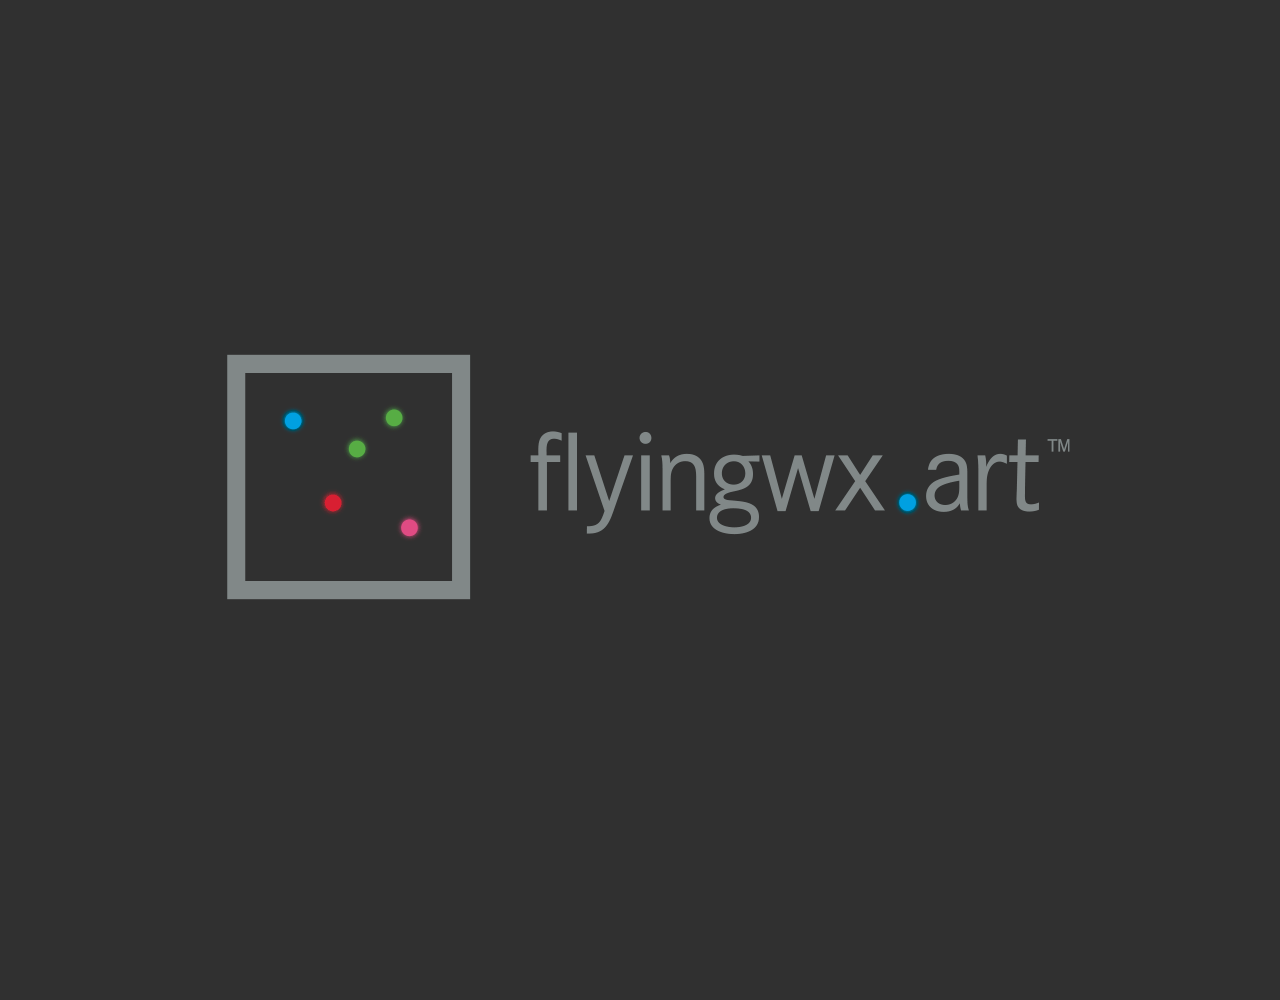 Flyingwx.art logo